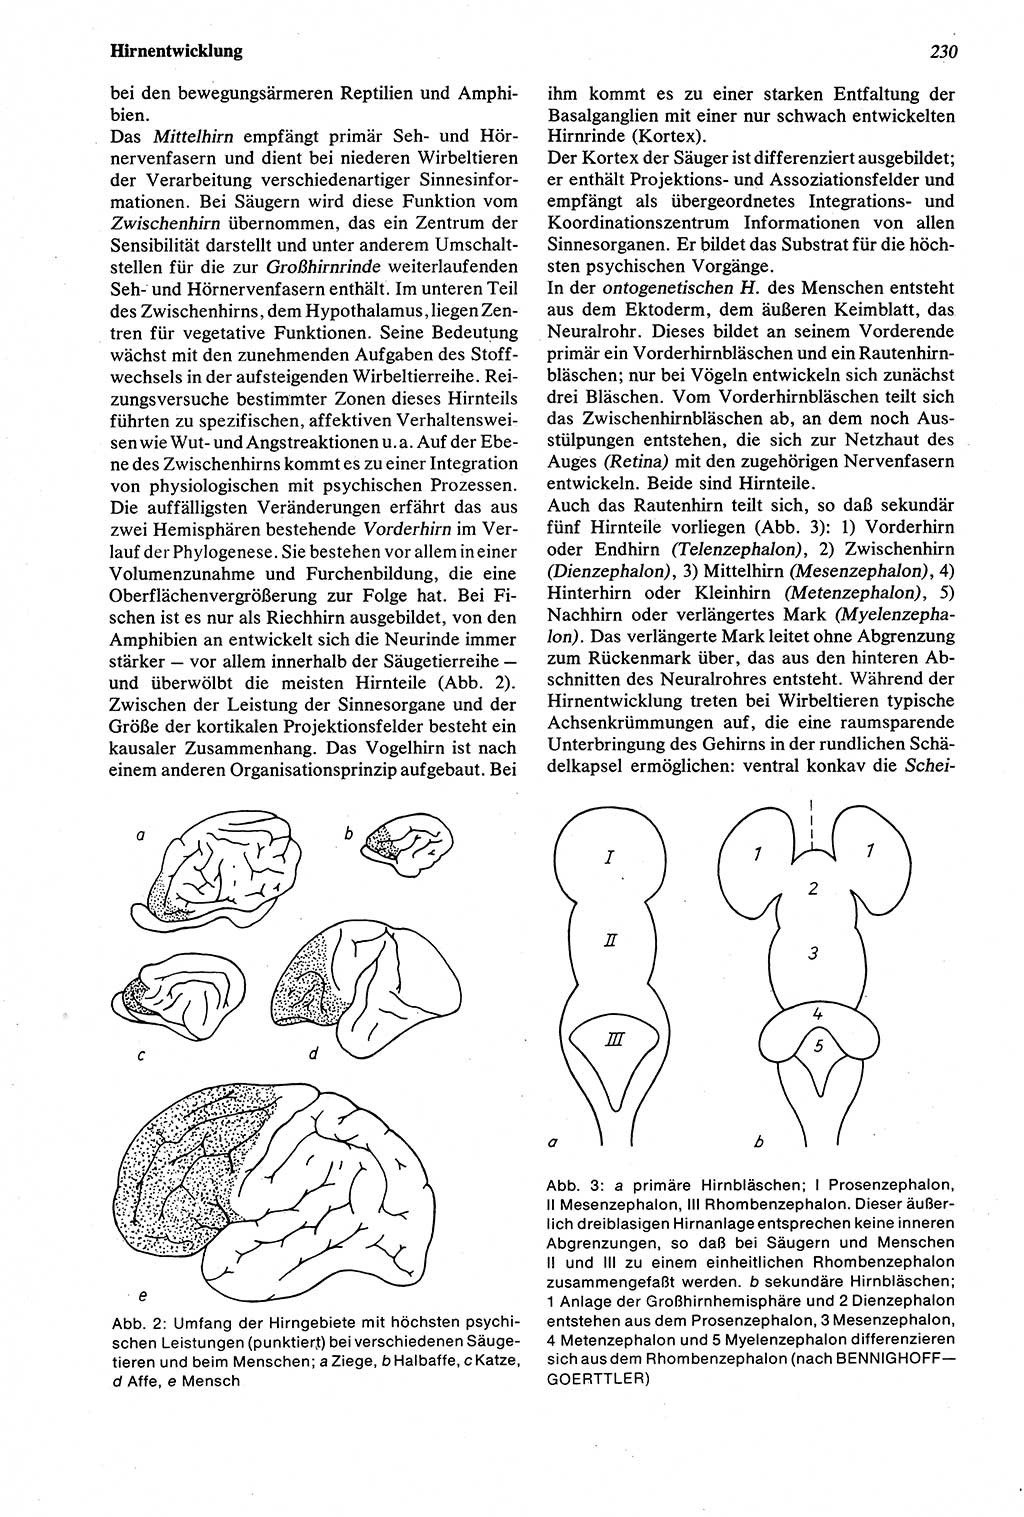 Wörterbuch der Psychologie [Deutsche Demokratische Republik (DDR)] 1976, Seite 230 (Wb. Psych. DDR 1976, S. 230)